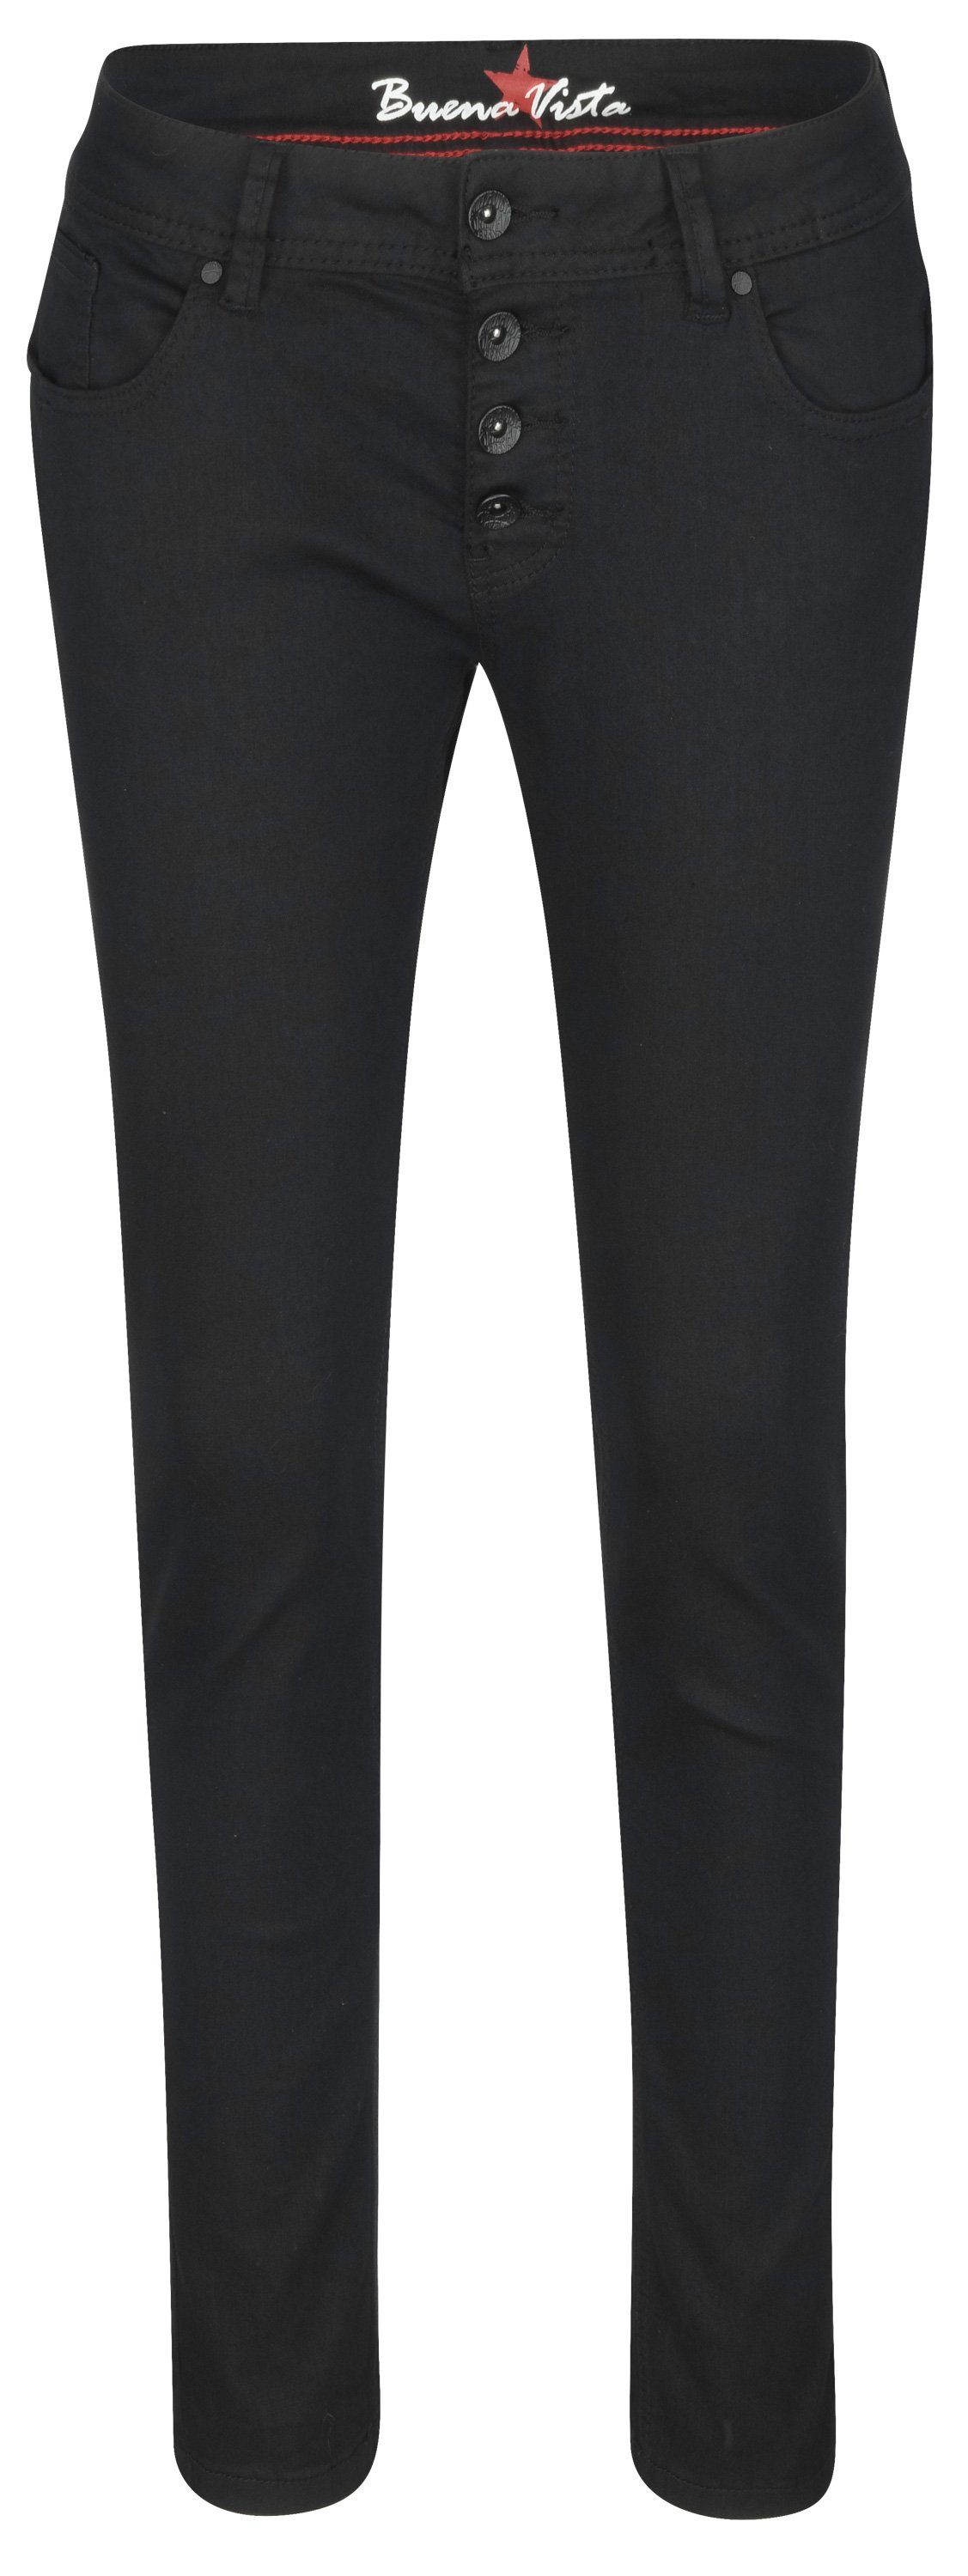 B5837 black Buena Vista - Stretch-Jeans crop S Twill 2309 VISTA Stretch MALIBU BUENA 660.014